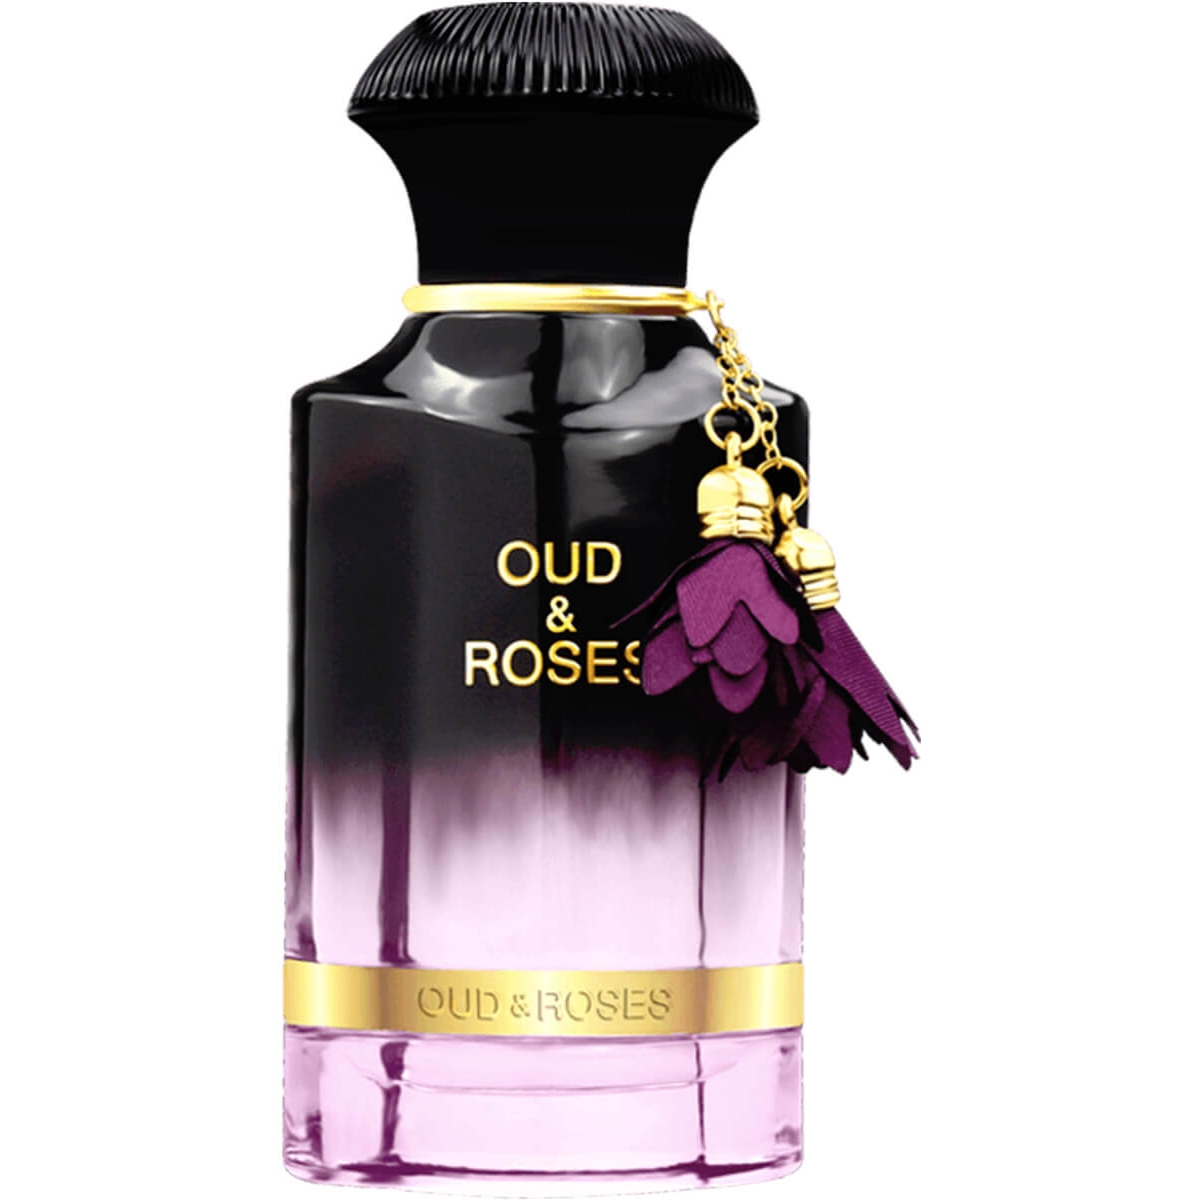 Oud&Roses Ahmed al Maghribi Perfumes Perfumes, Profumi Da Donna, Arada Perfumes